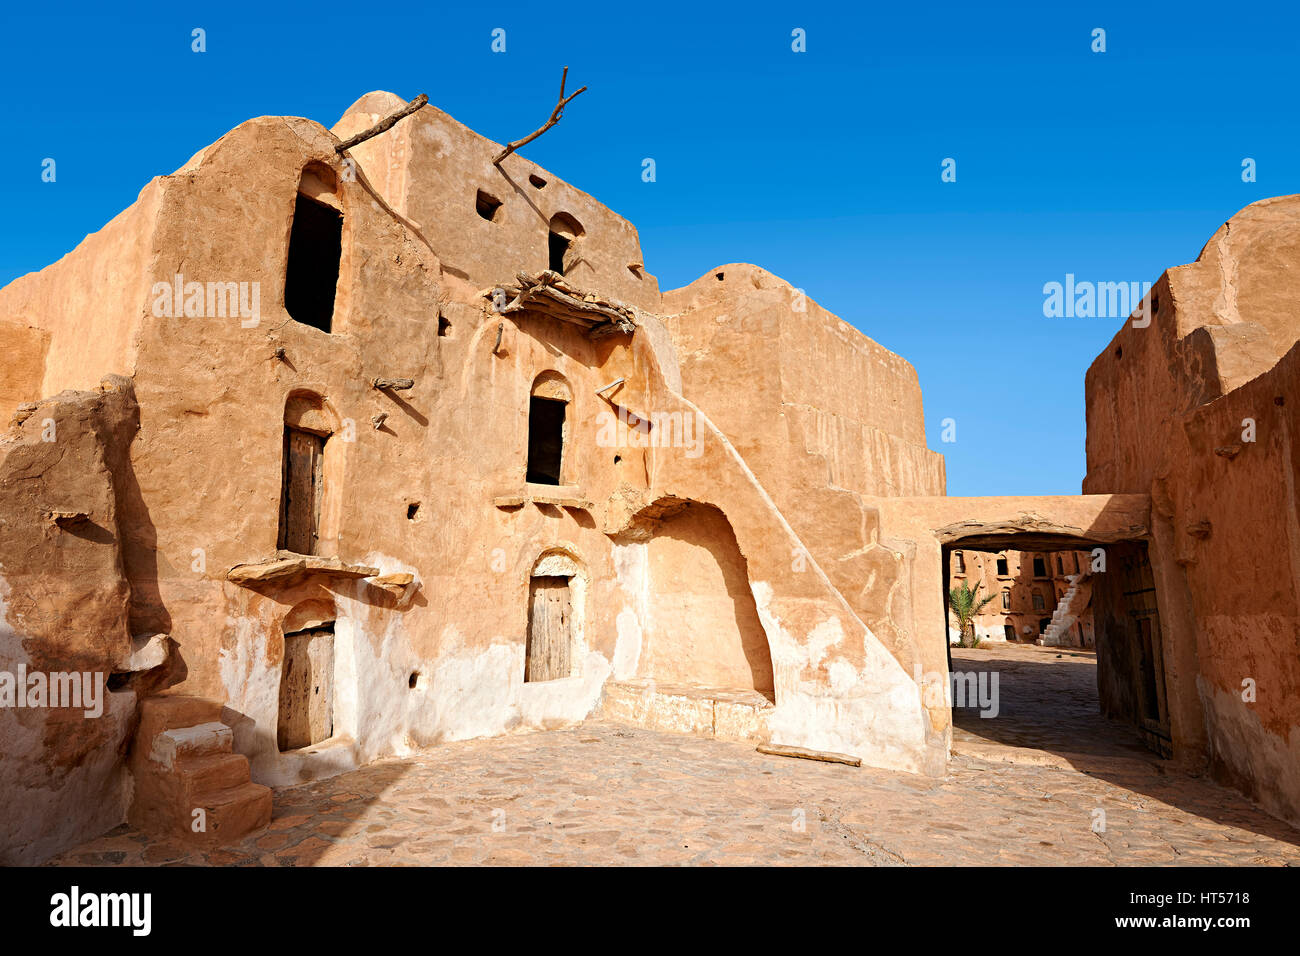 Ksar Ouled Soltane, un traditionnel berbère saharienne et arabes voûtée grenier fortifié adobe caves, Tunisie Banque D'Images